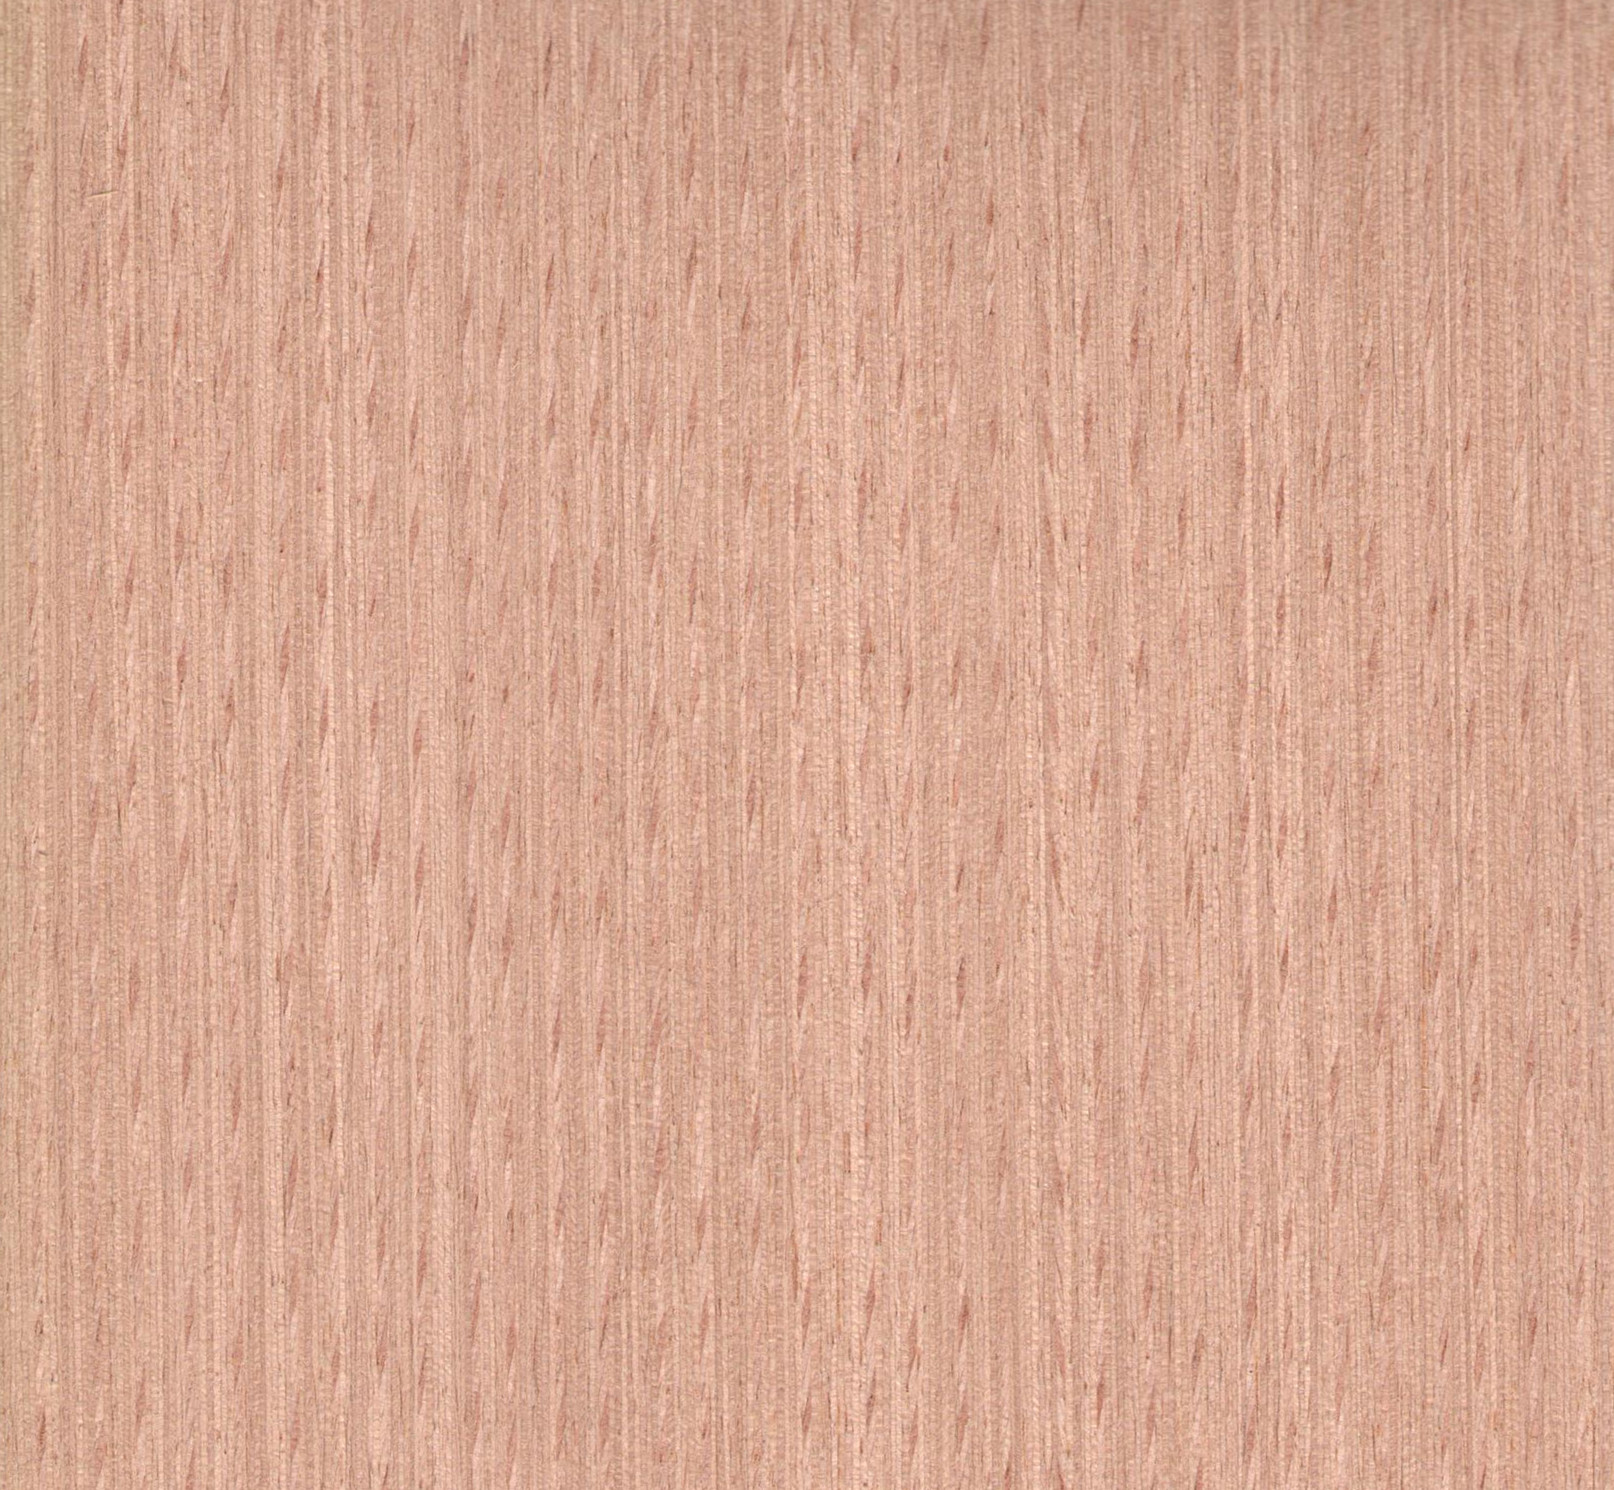 维尼VN29 红榉科技木皮